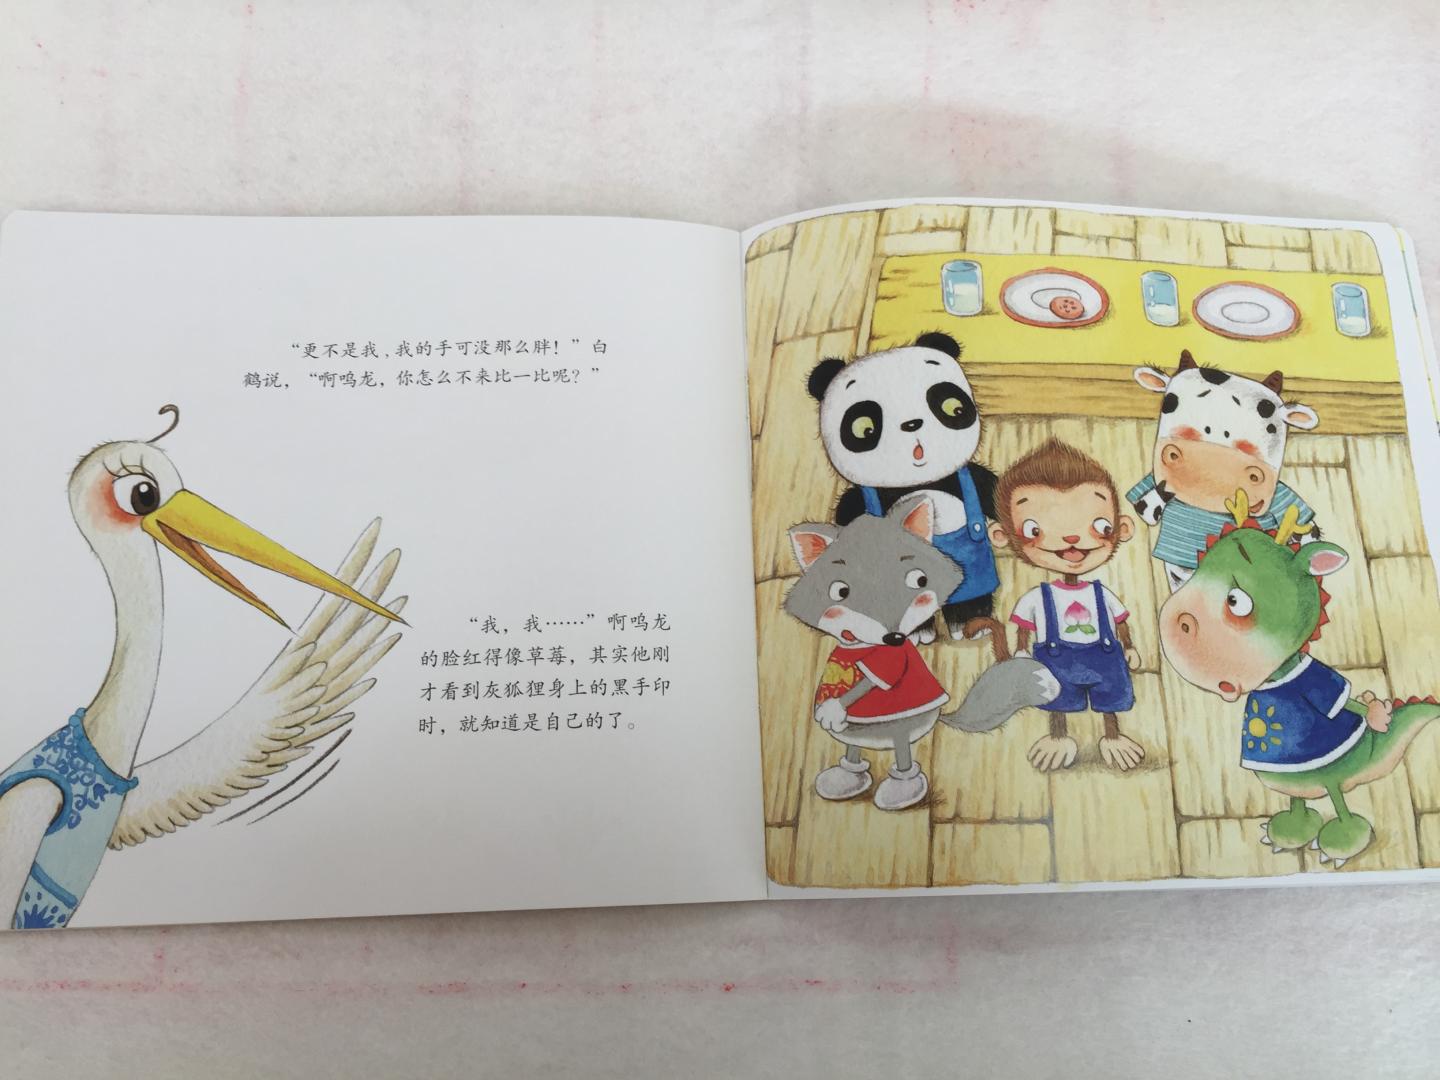 一套很可爱的书 十本小故事 还有一本家长手册 有指导有知识 满满的干货 宝宝从小就喜欢熊猫 对书中的一对小熊猫更是喜欢得不得了 总是让我讲他们的故事